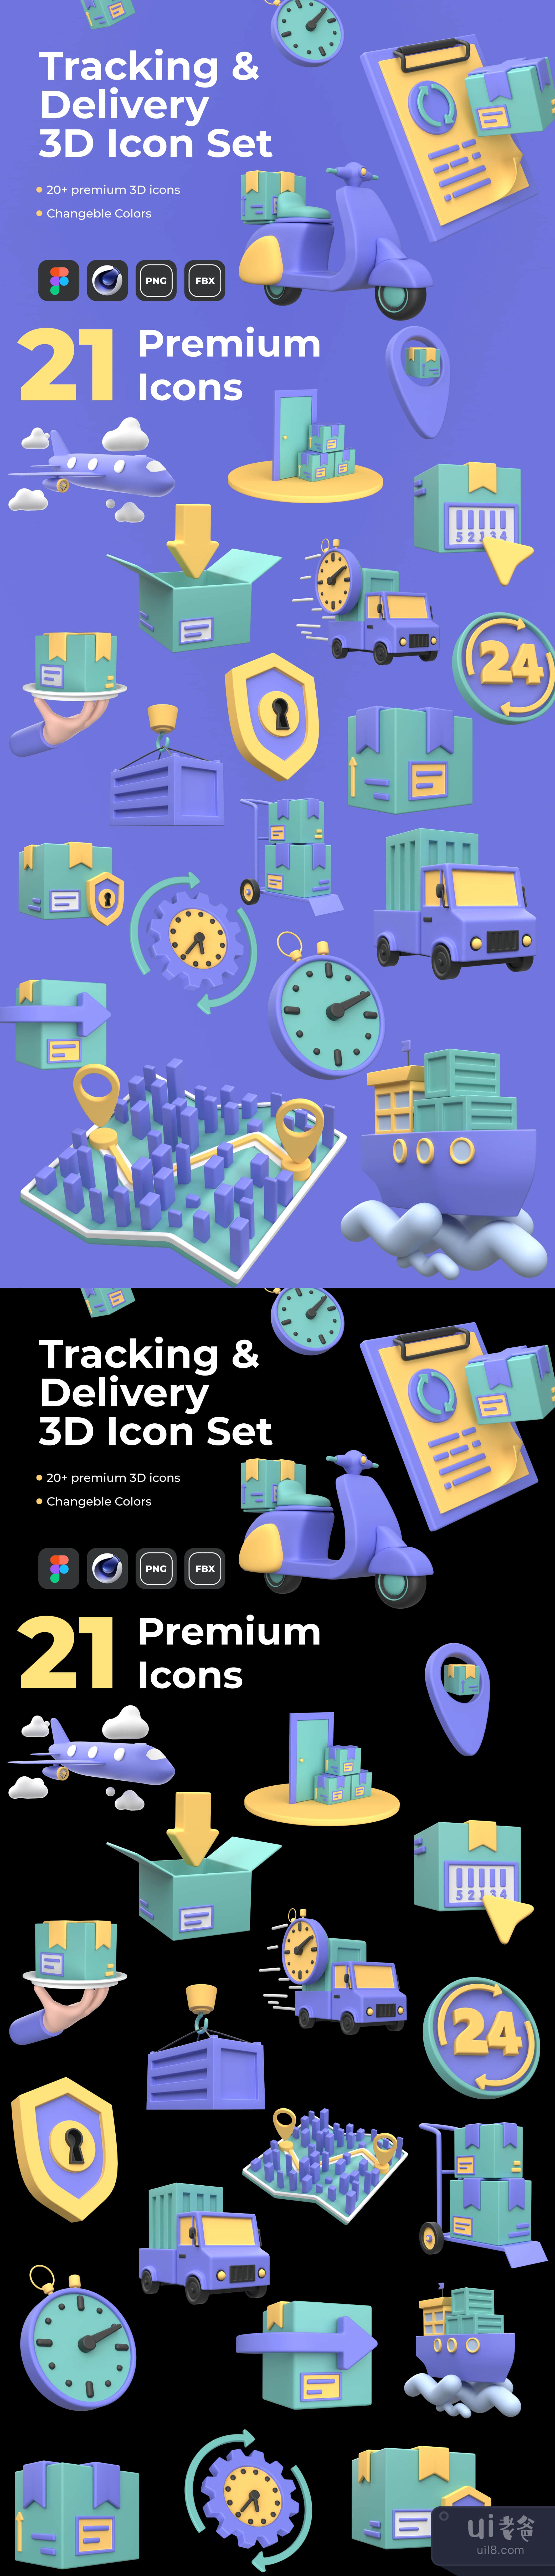 跟踪和交付3D图标集 (Tracking & Delivery 3D Icon Set)插图